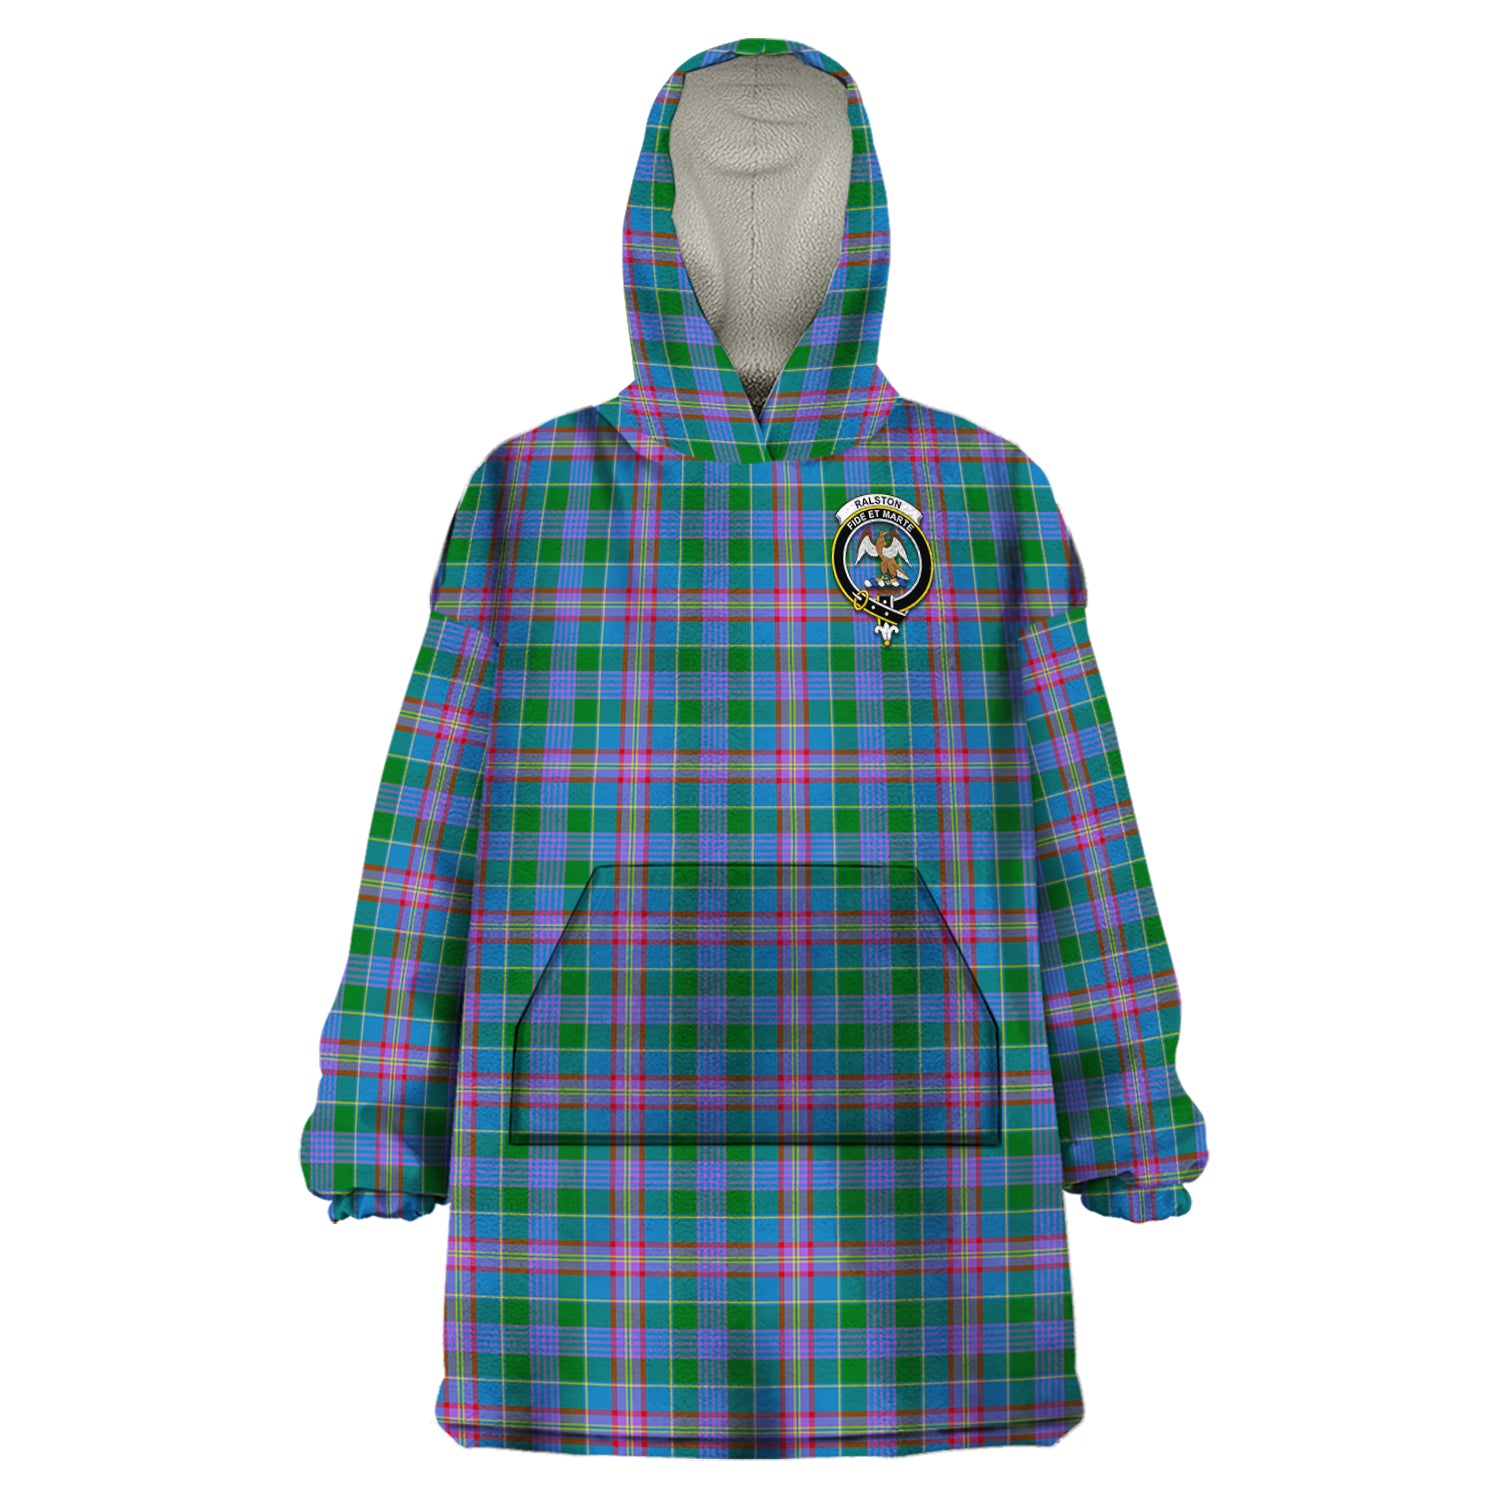 scottish-ralston-clan-crest-tartan-wearable-blanket-hoodie